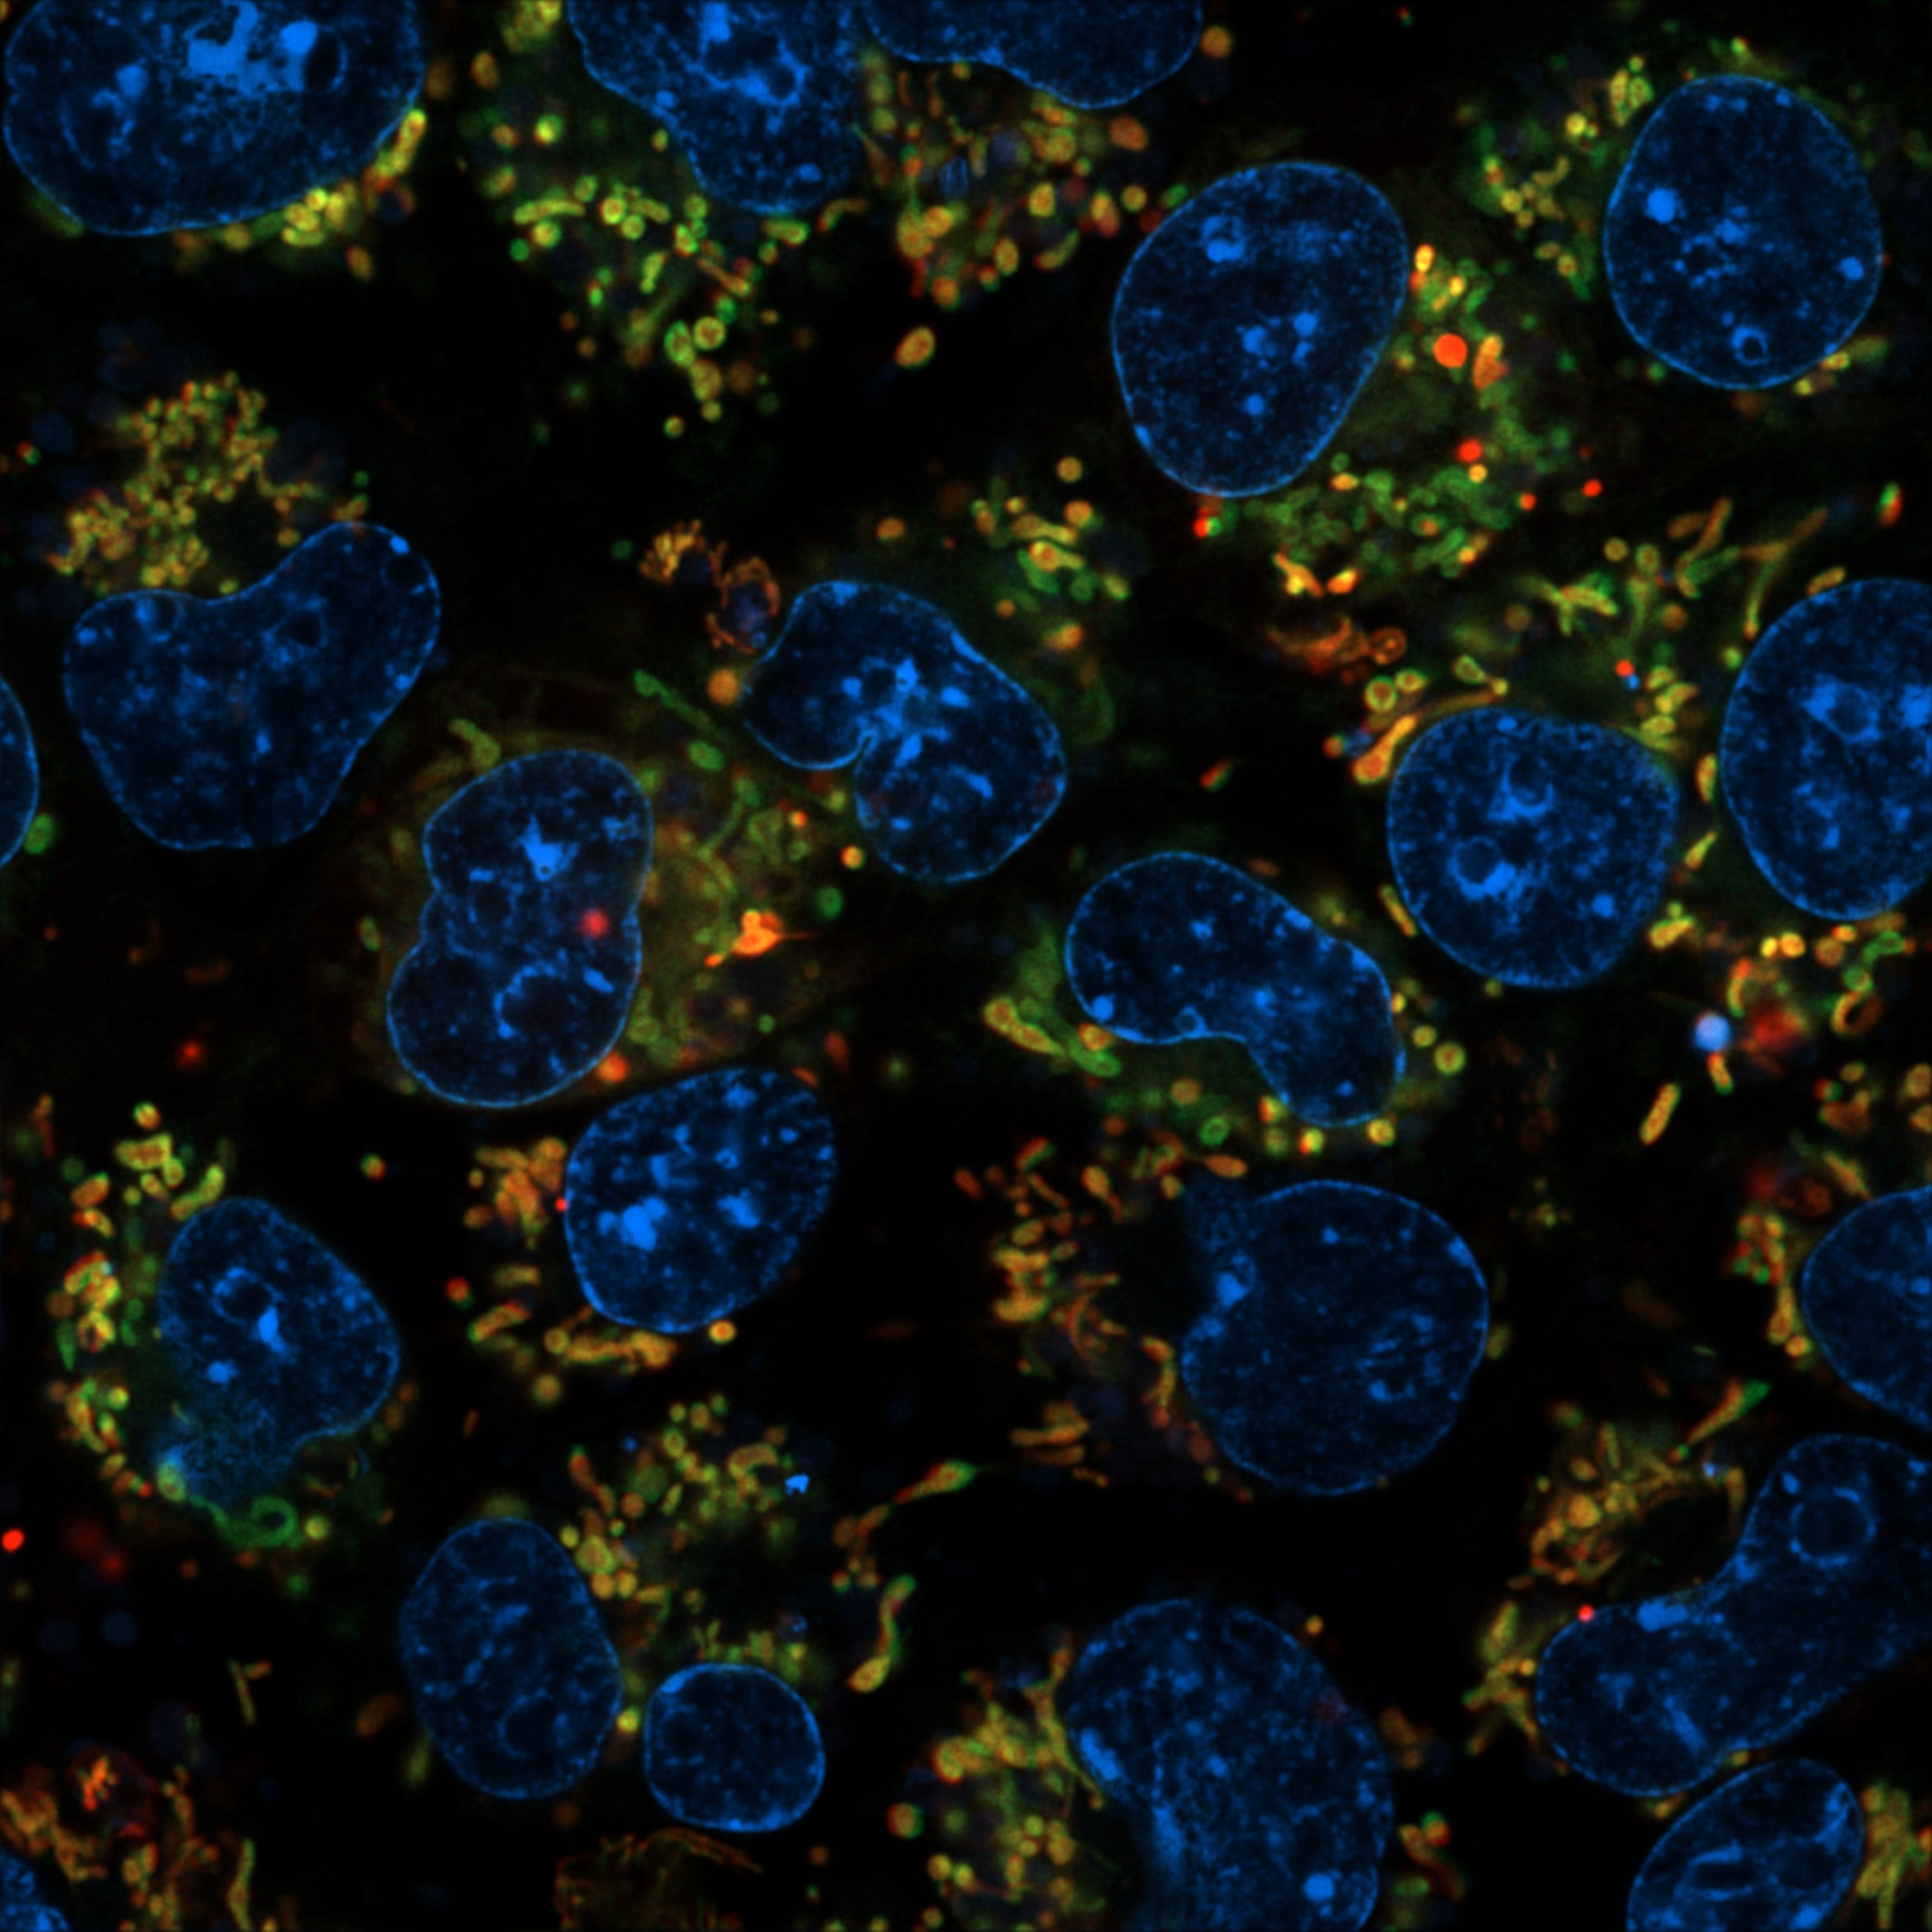 nuclei e mitocondri cellulari marcati in fluorescenza-ft credits @CEINGE -immagine soggetta a copyright